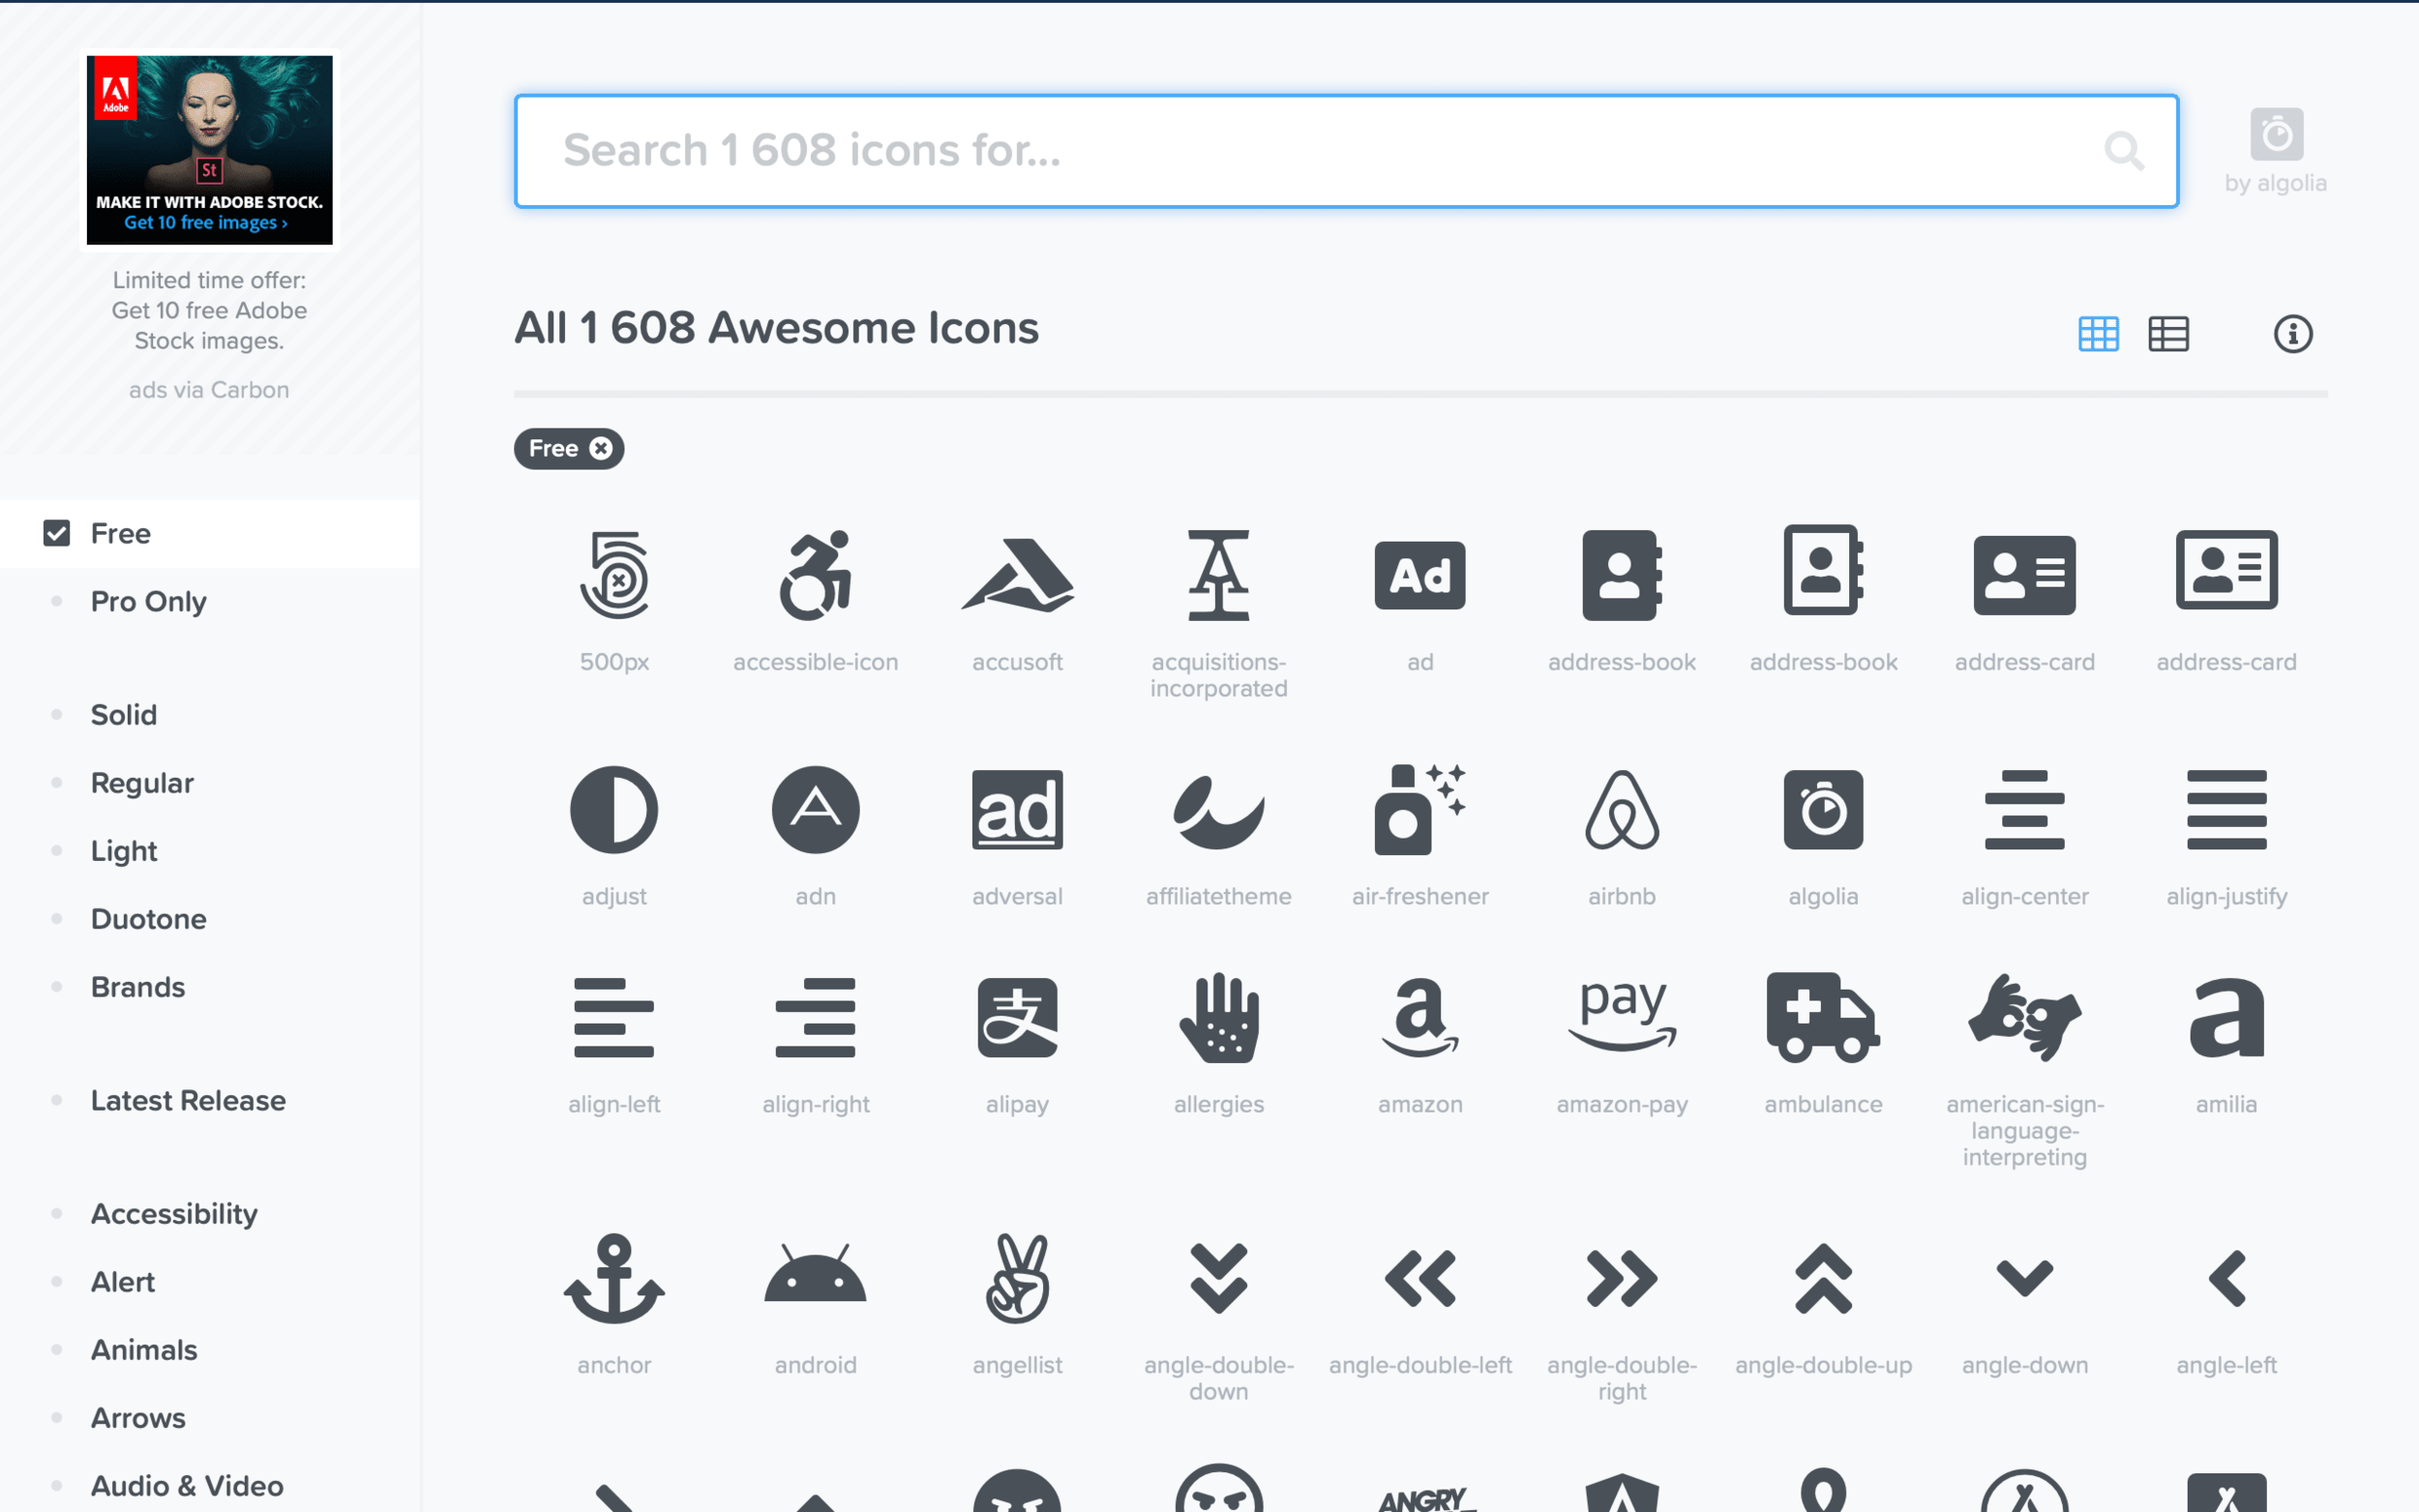 Icons cdn. Font Awesome icons. Fa fa icon список. Font Awesome icons cdn. Fa fa icon add icon.